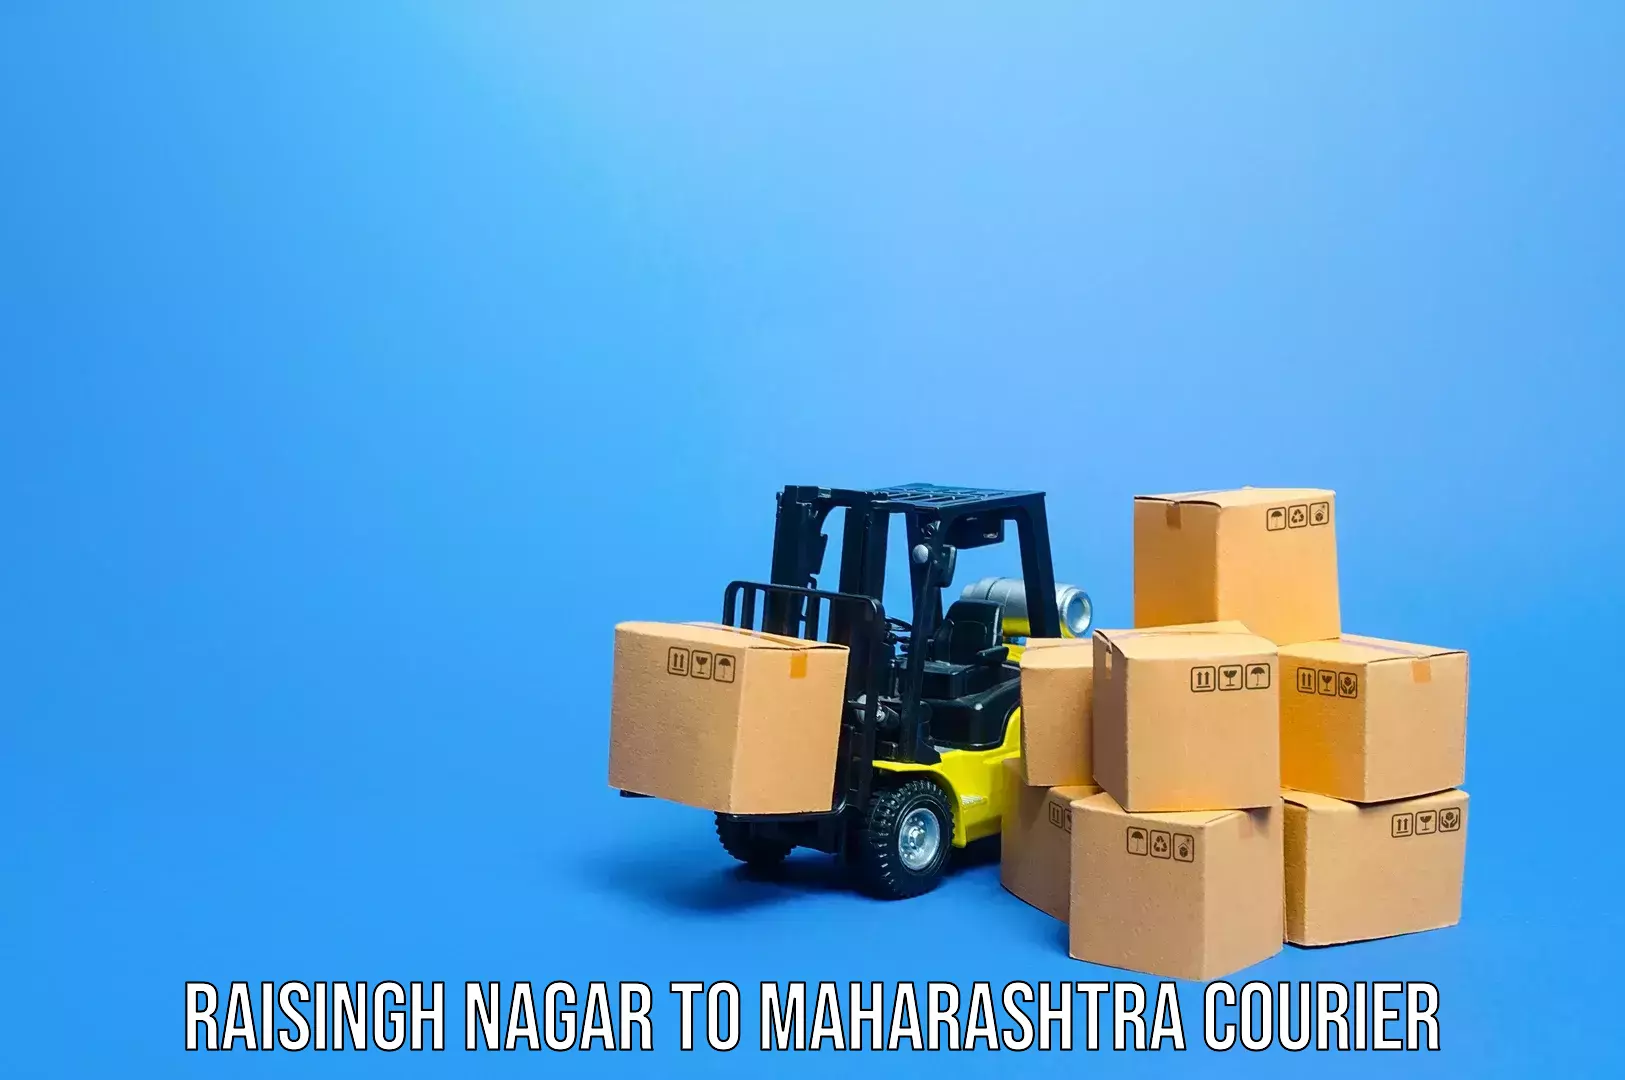 Weekend baggage shipping Raisingh Nagar to Maharashtra